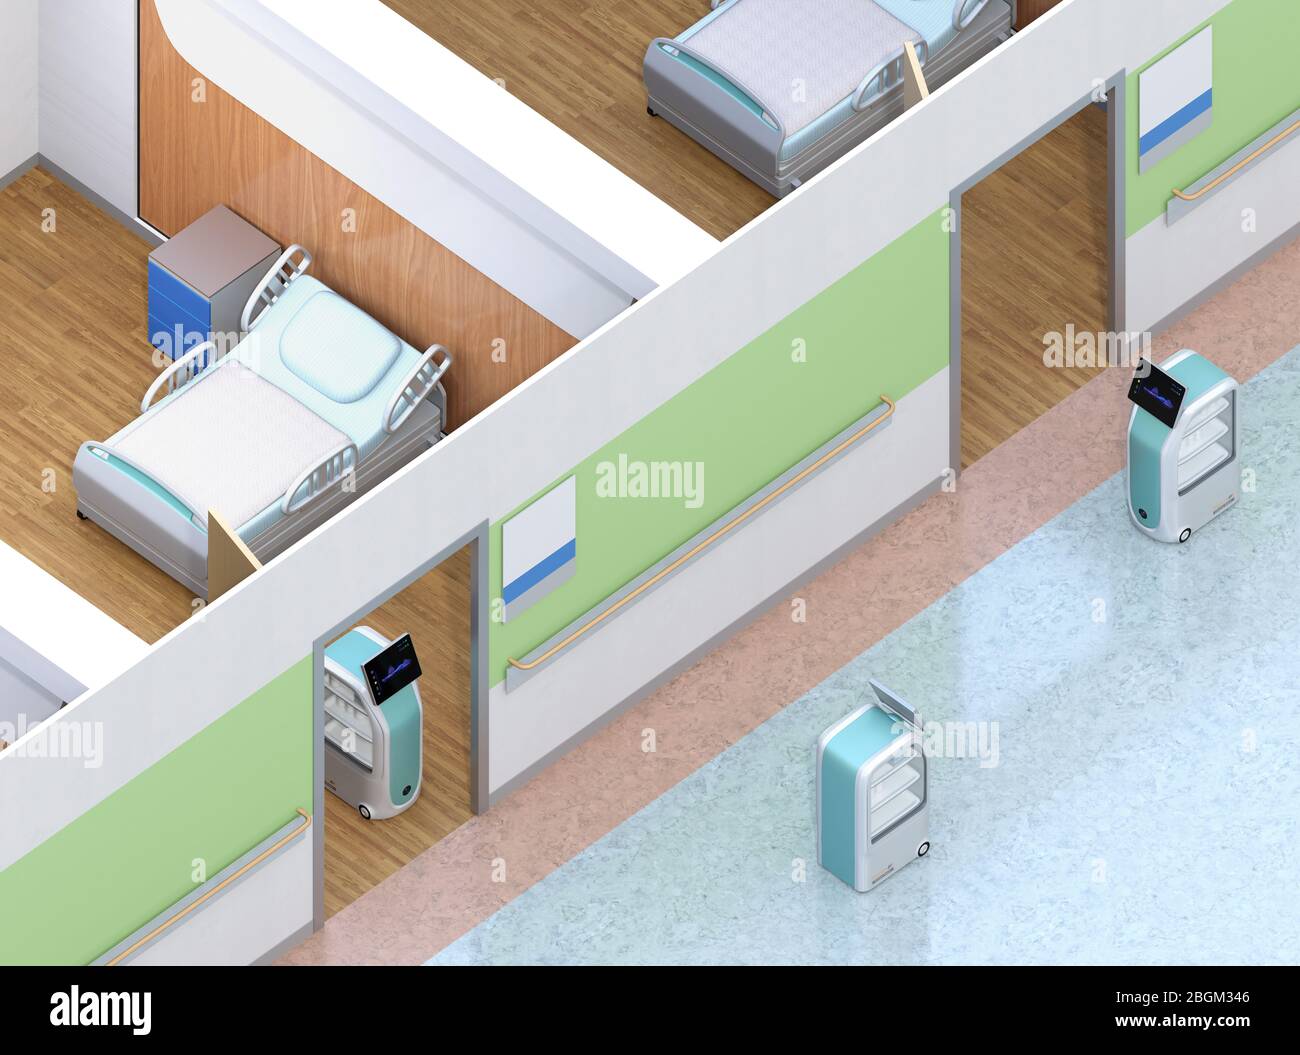 Vue isométrique des robots de livraison médicale travaillant à l'hôpital. Concept de prévention des infections. Image de rendu 3D. Banque D'Images